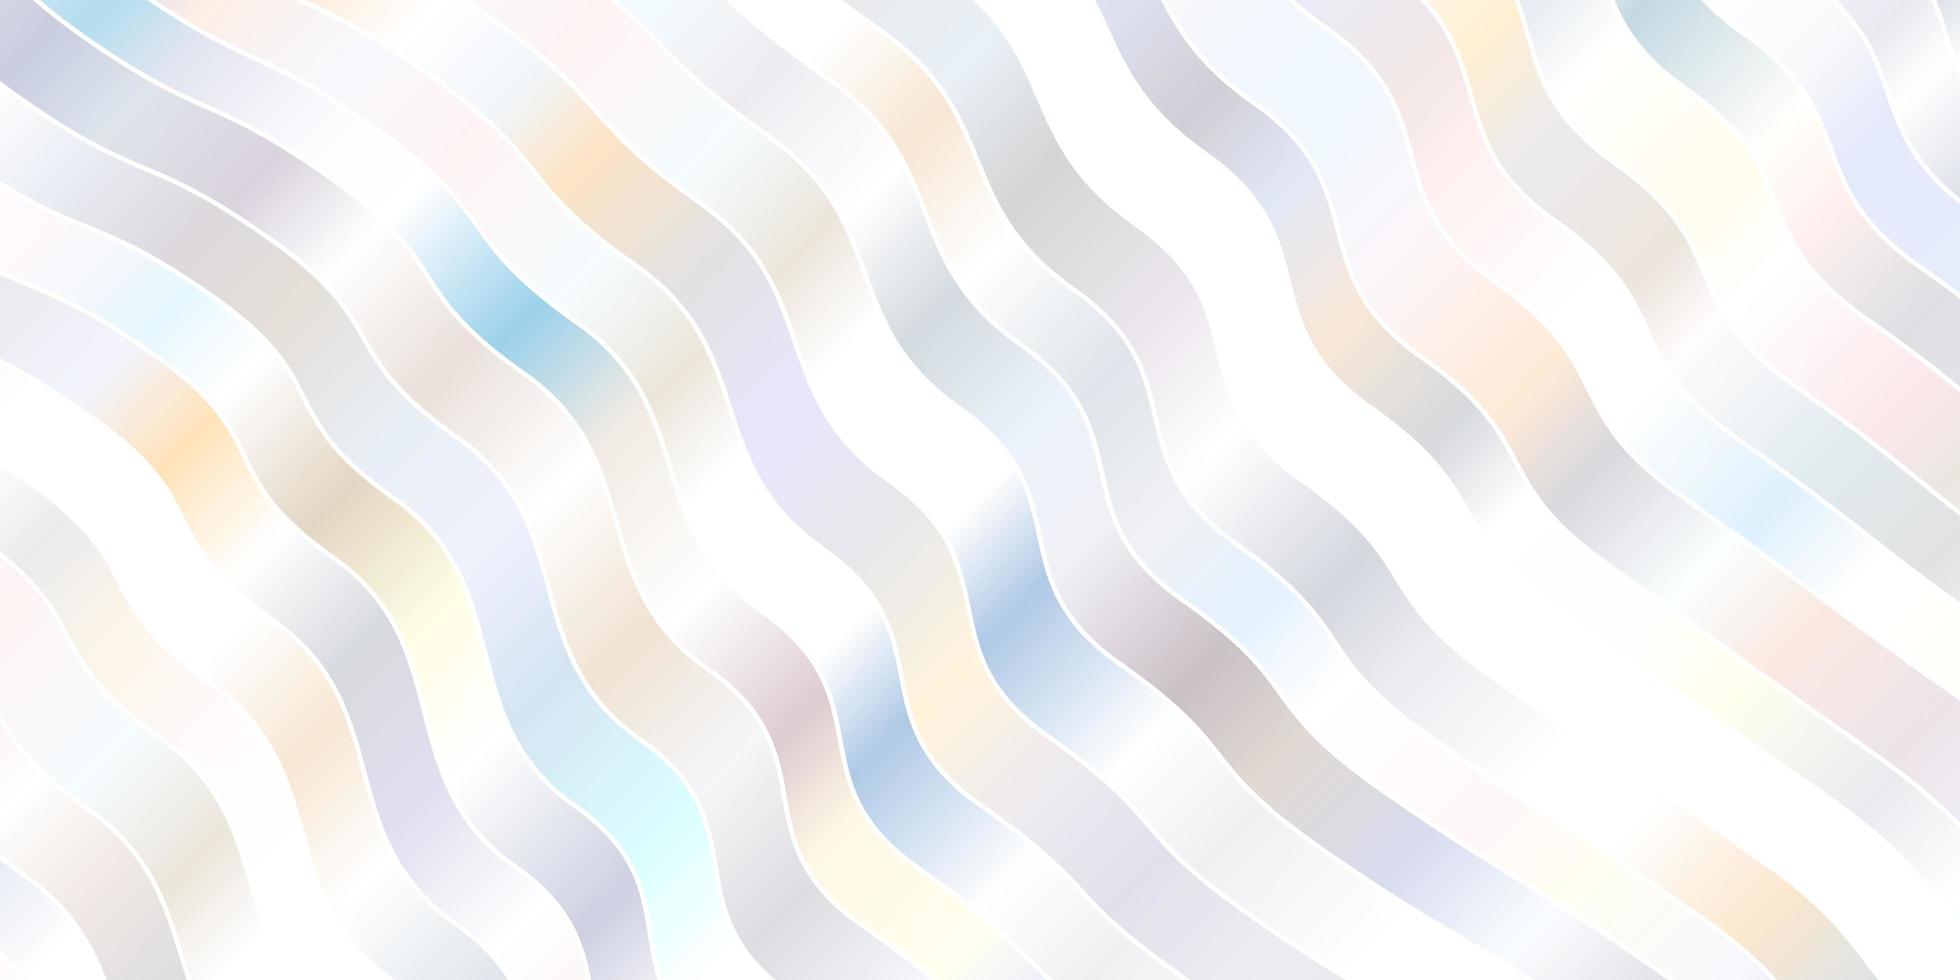 modelo de vetor roxo claro com linhas irônicas ilustração colorida em estilo abstrato com padrão de linhas dobradas para folhetos de livretos de negócios